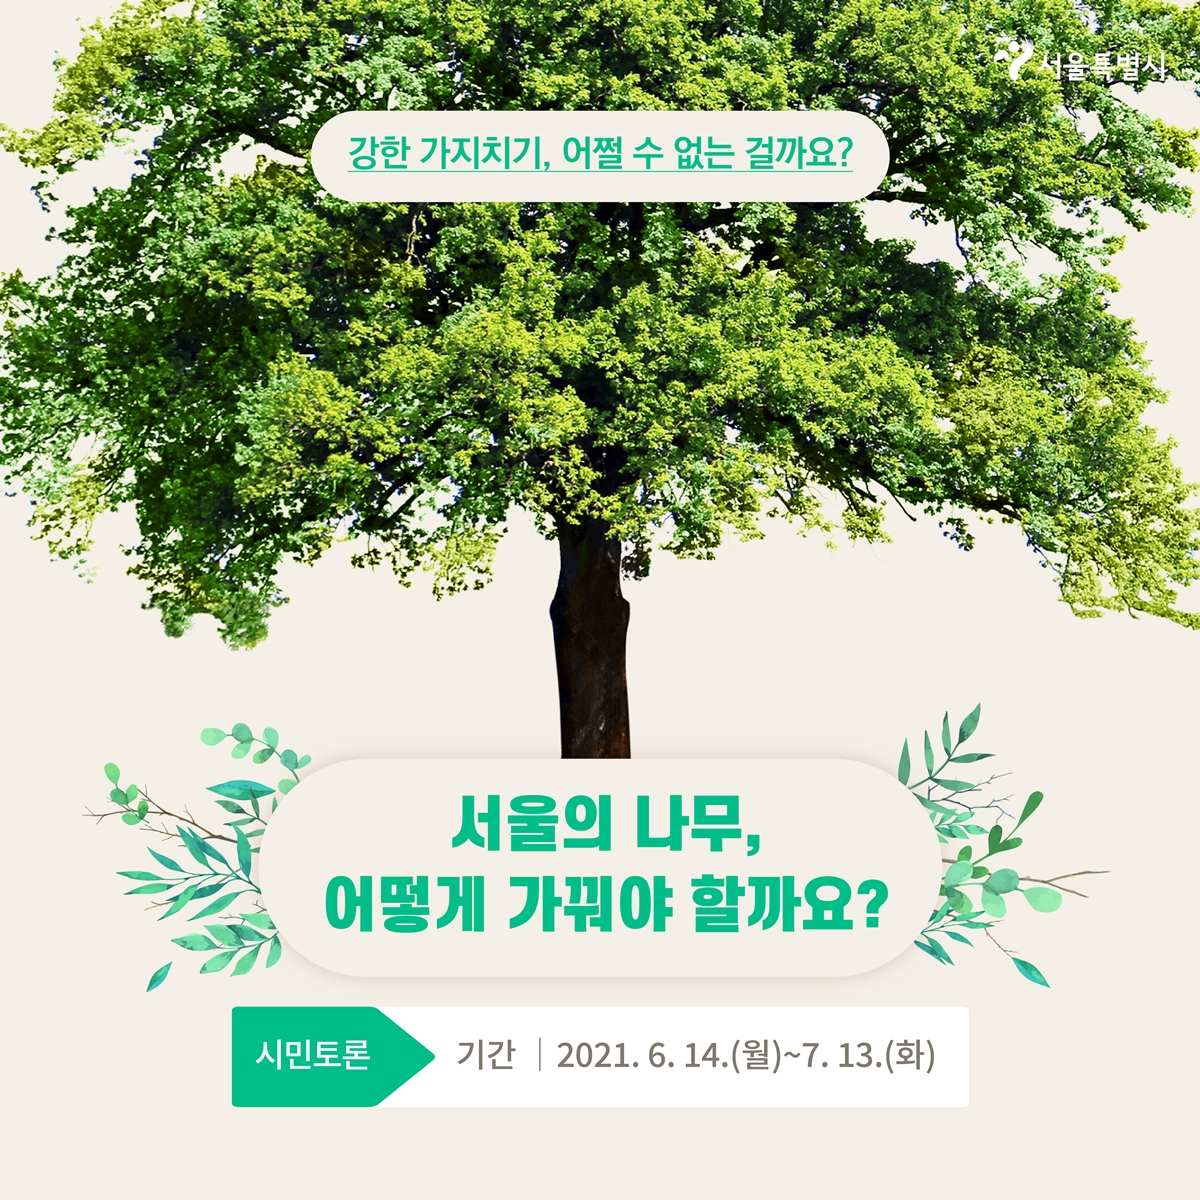 강한 가지치기, 어쩔 수 없는 걸까요? 서울의 나무, 어떻게 가꿔야 할까요 시민토론 기간|2021.6.14(월)~7.13(화)